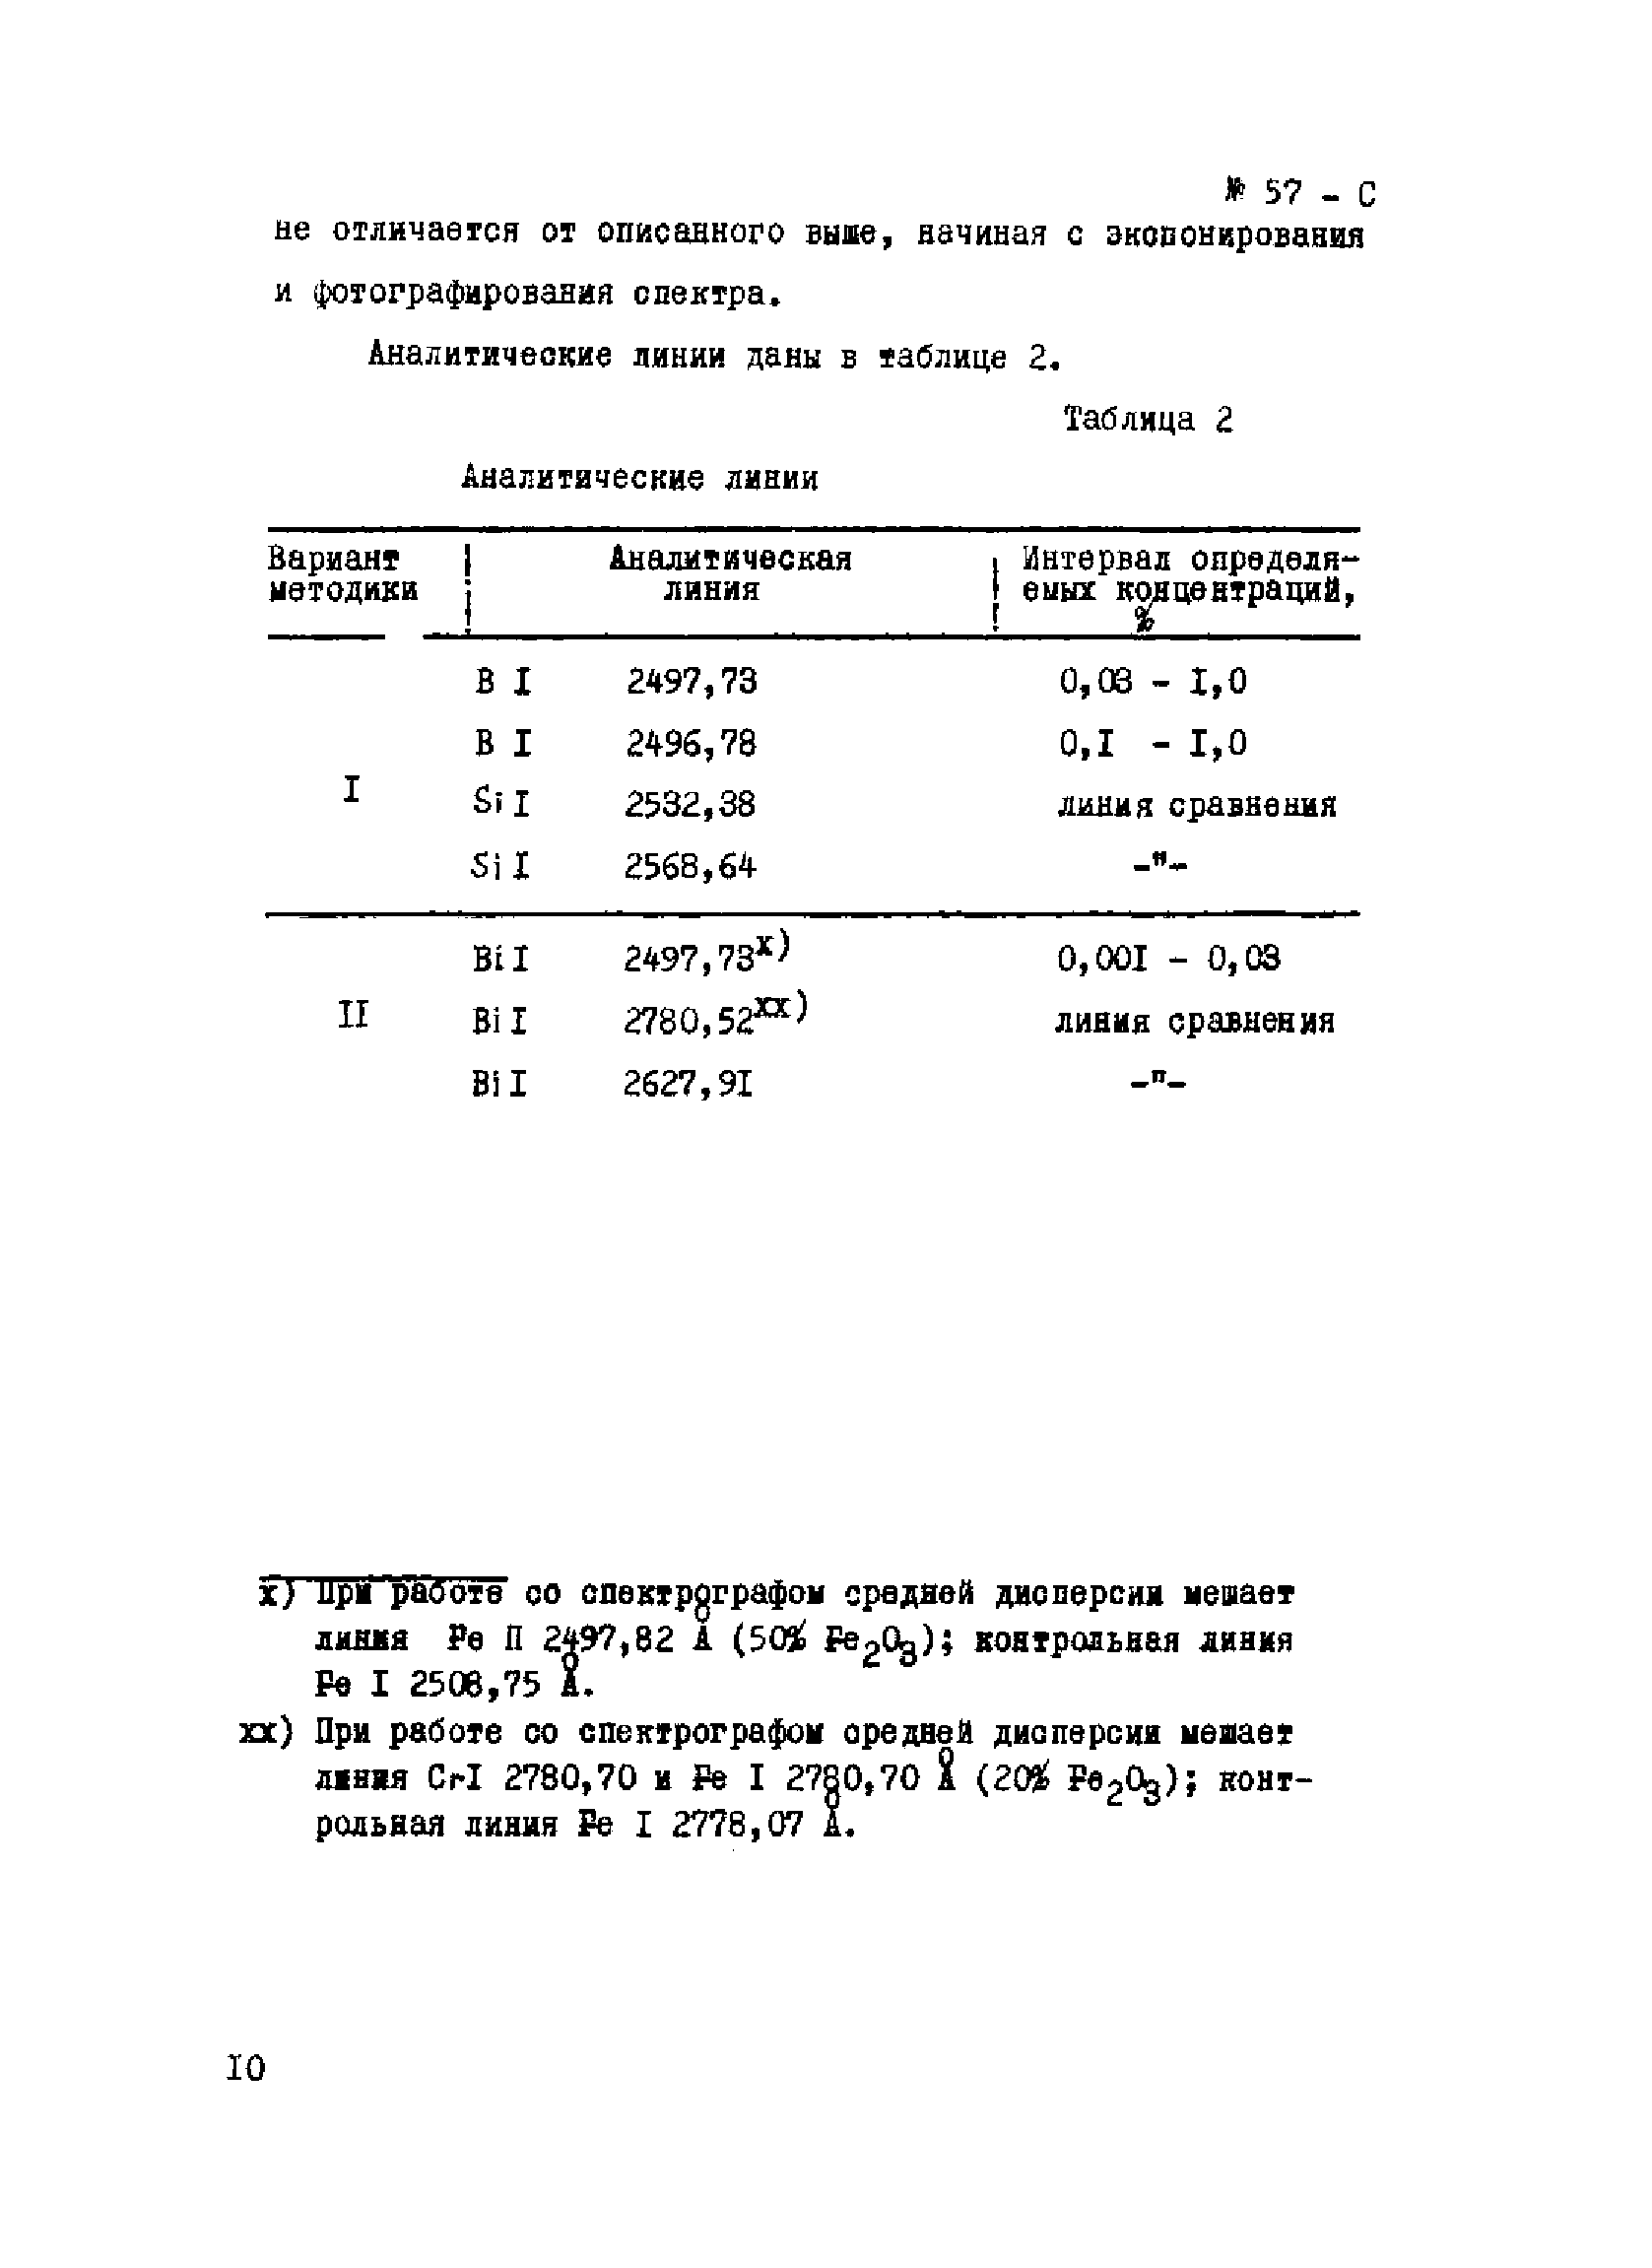 Инструкция НСАМ 57-С